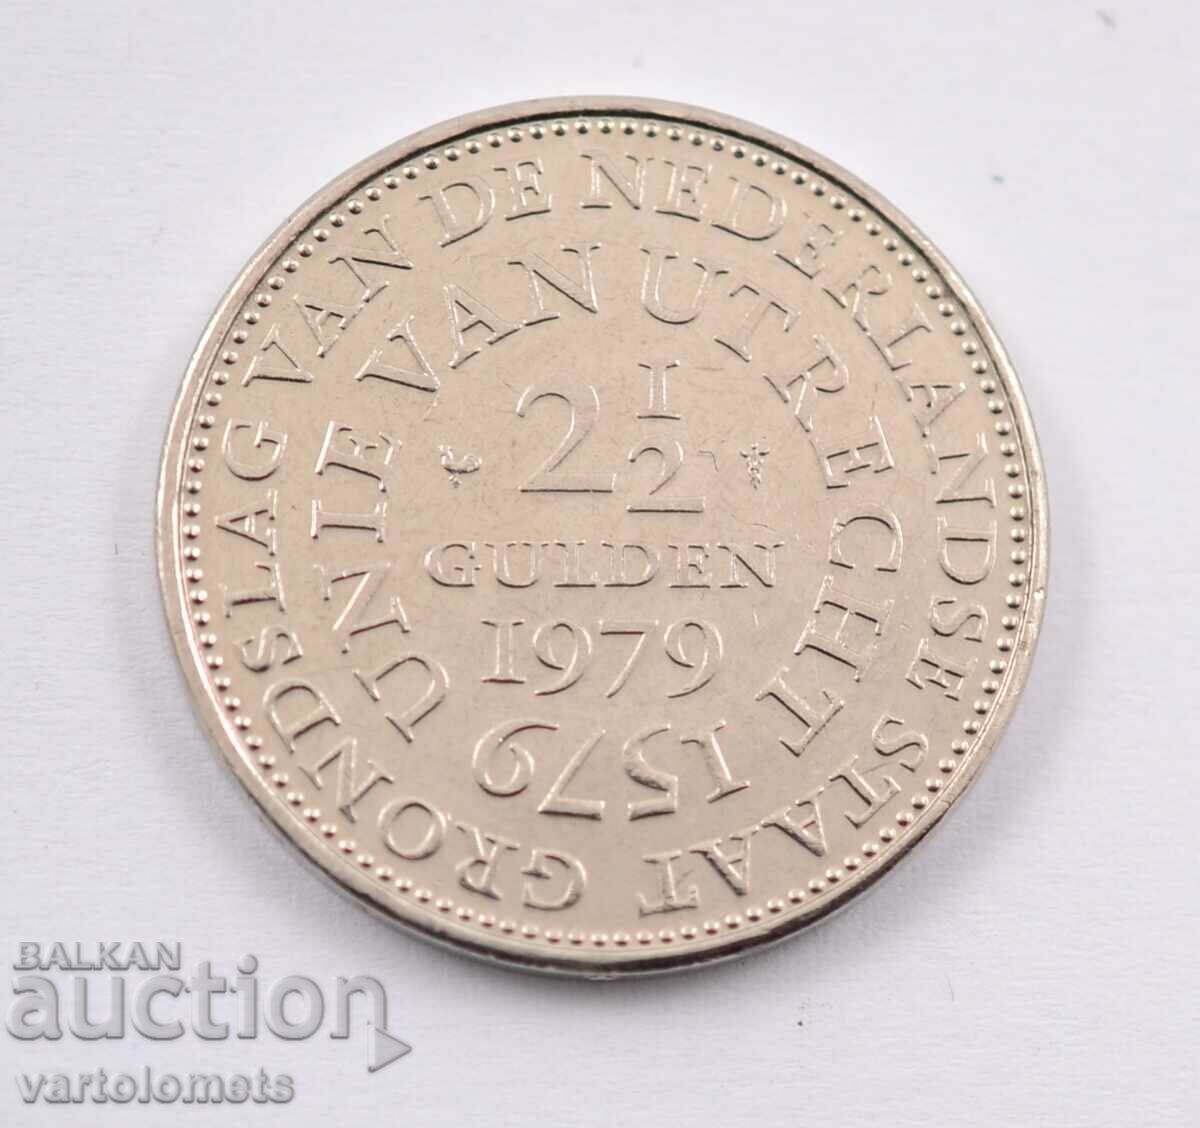 2 guldeni și jumătate, 1979 - Țările de Jos, 400 de ani de la Unirea de la Utrecht